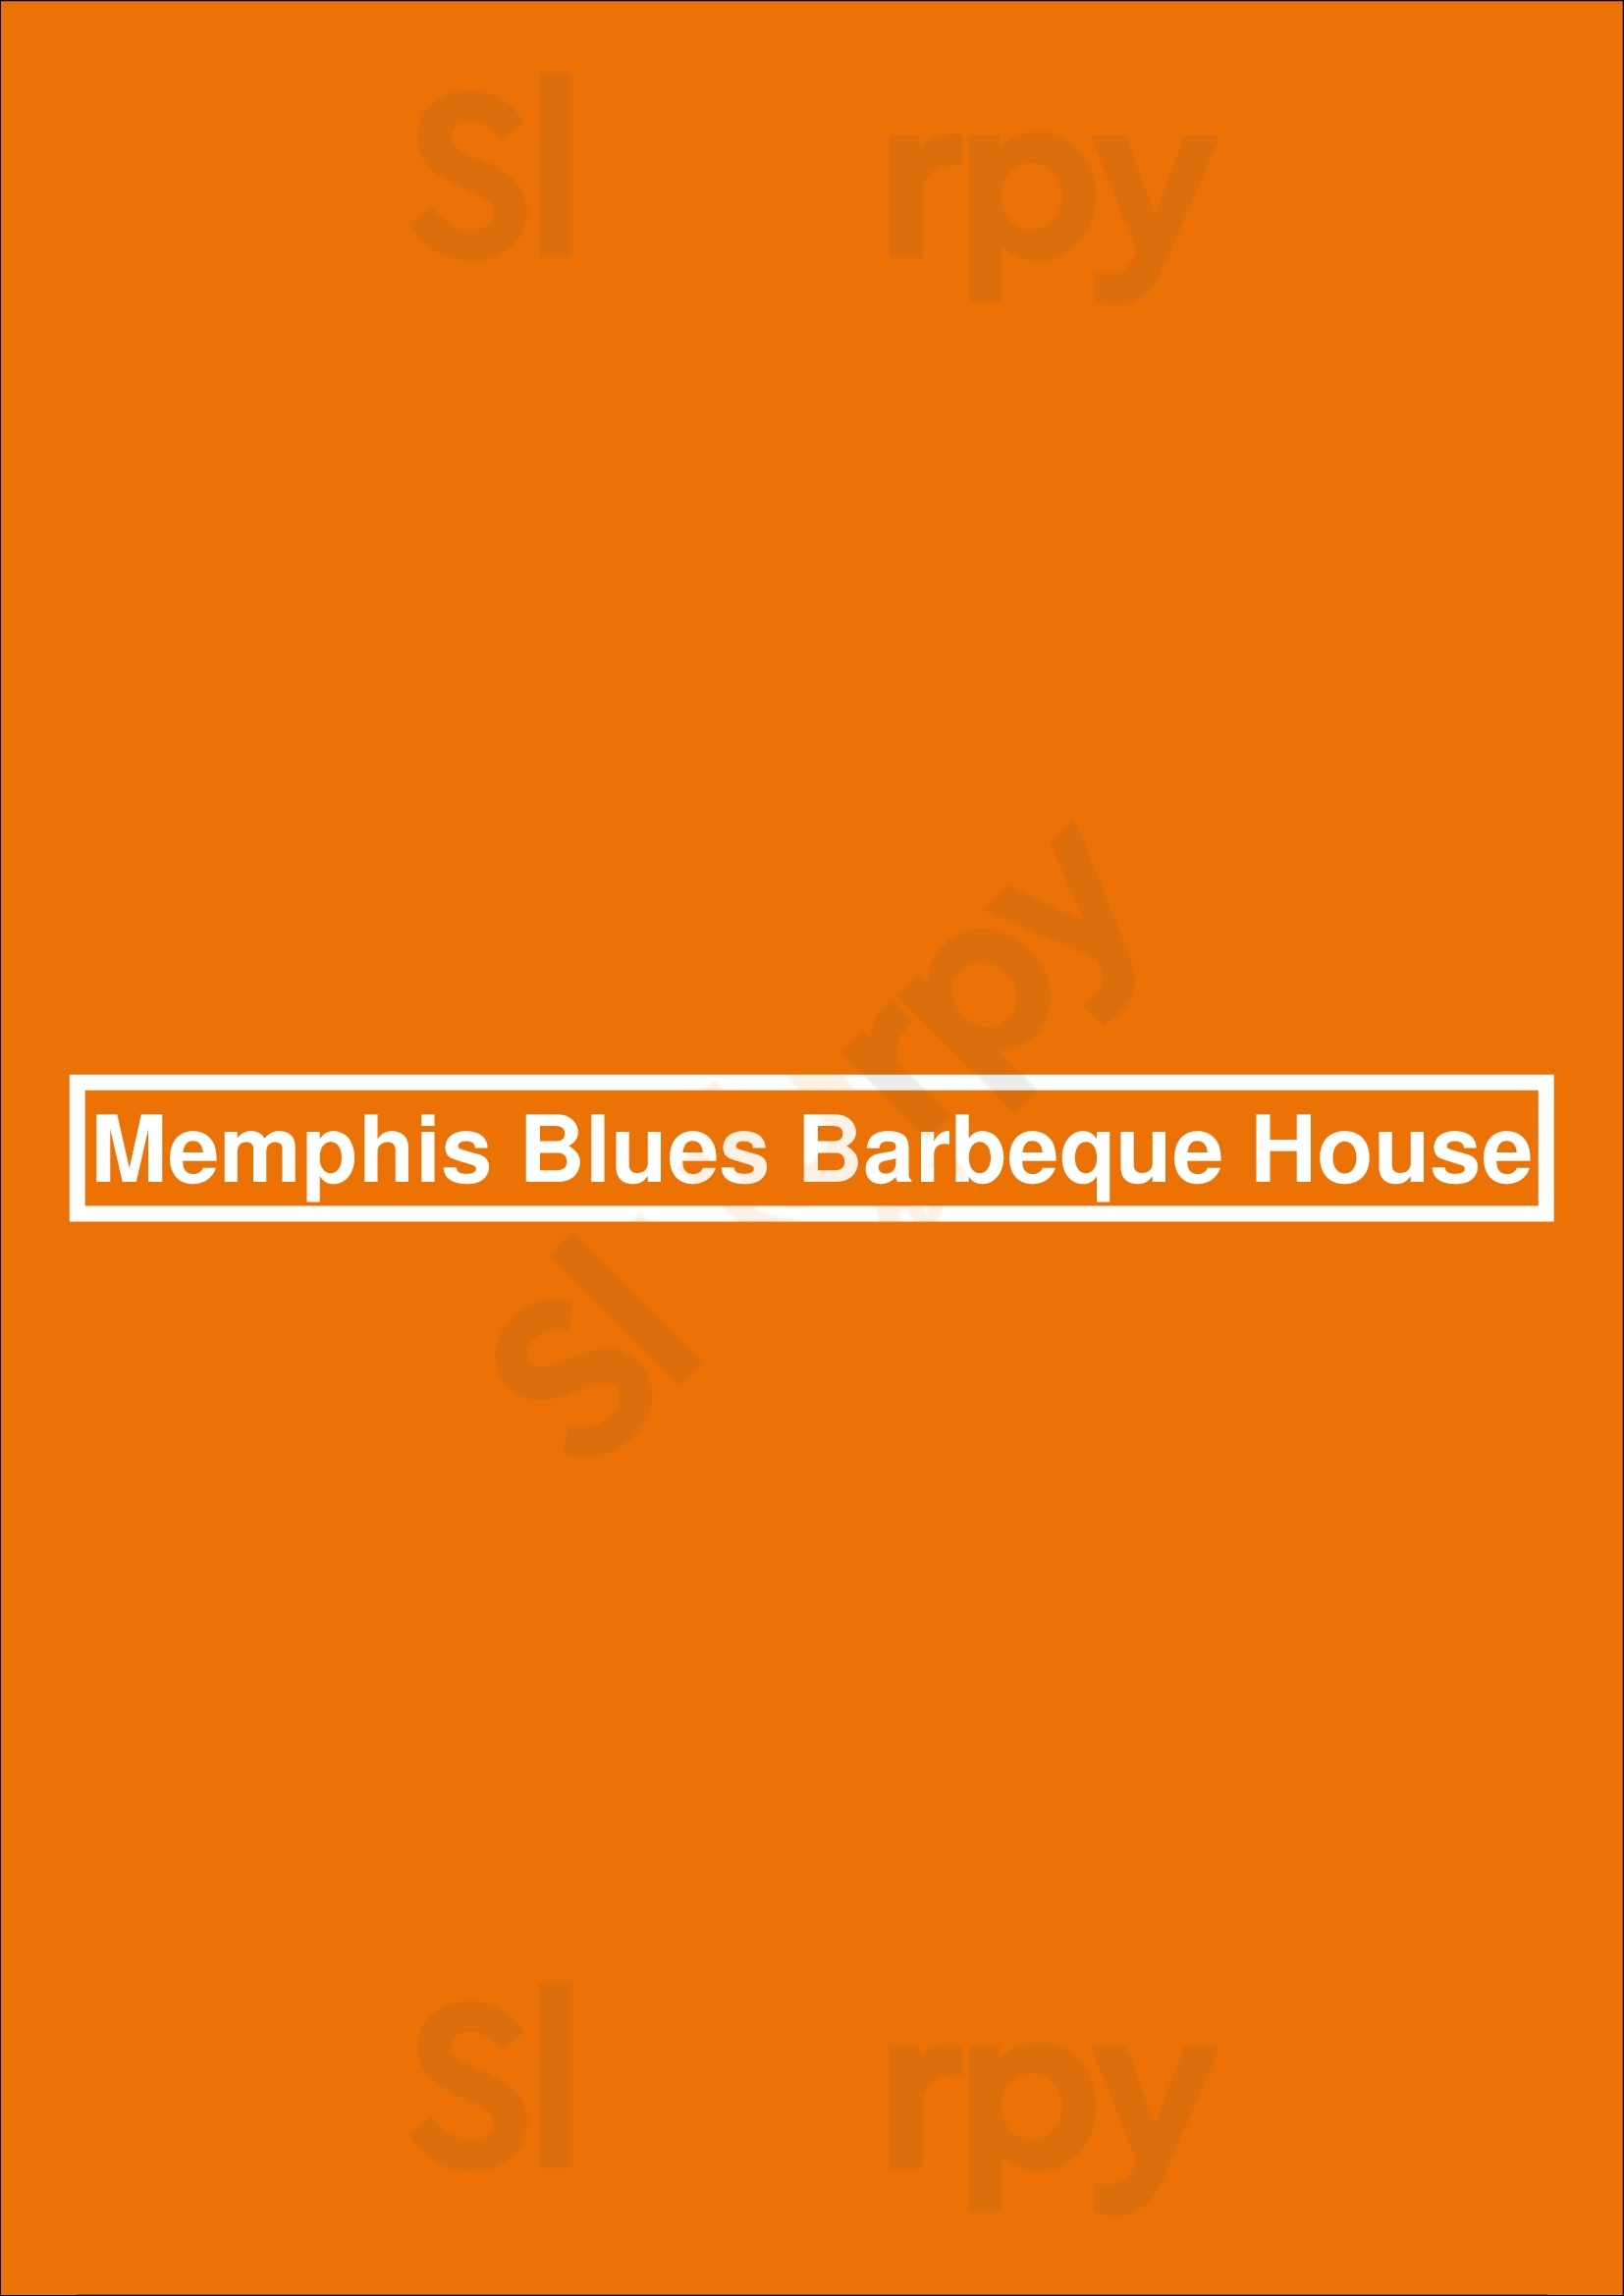 Memphis Blues Barbeque House Edmonton Menu - 1